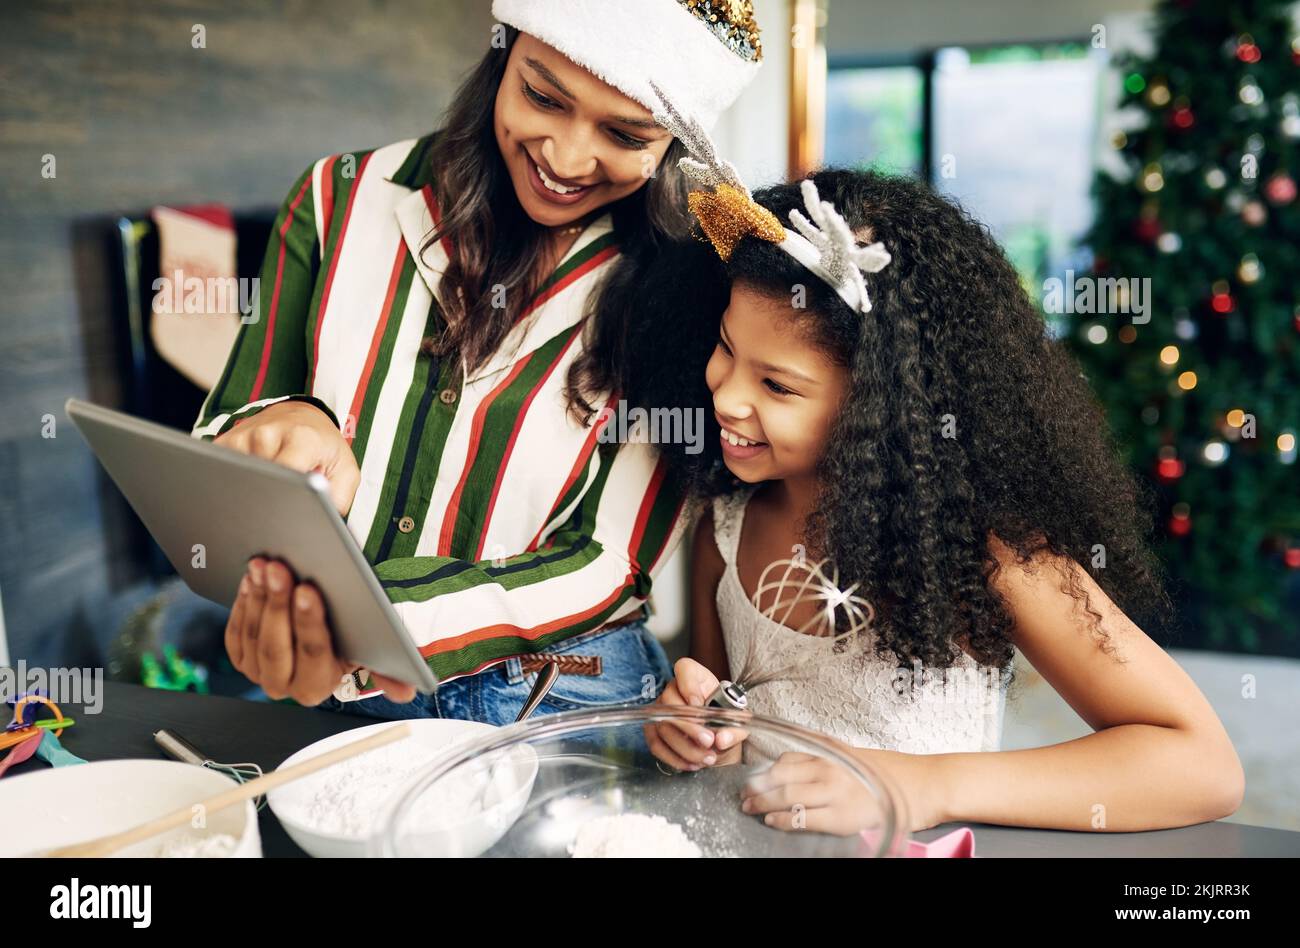 Weihnachten, Tablet und Kochfamilie mit Kind und Mutter, die ein Online-Rezept, Informationen auf der Website und einen Food-Blog für den Urlaub lesen. Schwarze familienmutter Stockfoto